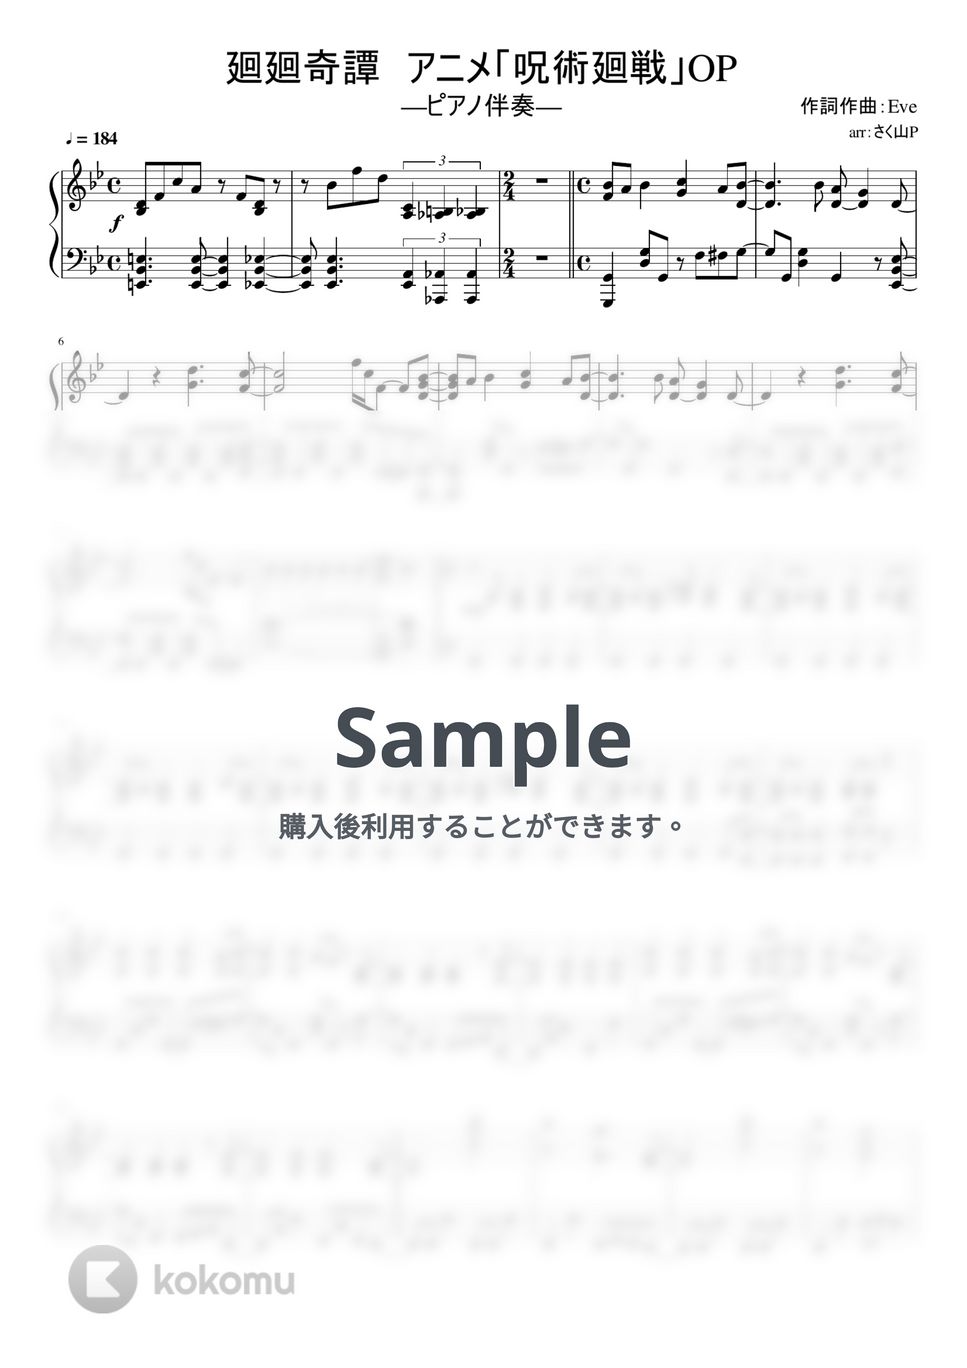 呪術廻戦 - 廻廻奇譚 (ピアノ伴奏 / 呪術廻戦op / 中級～上級) by さく山P